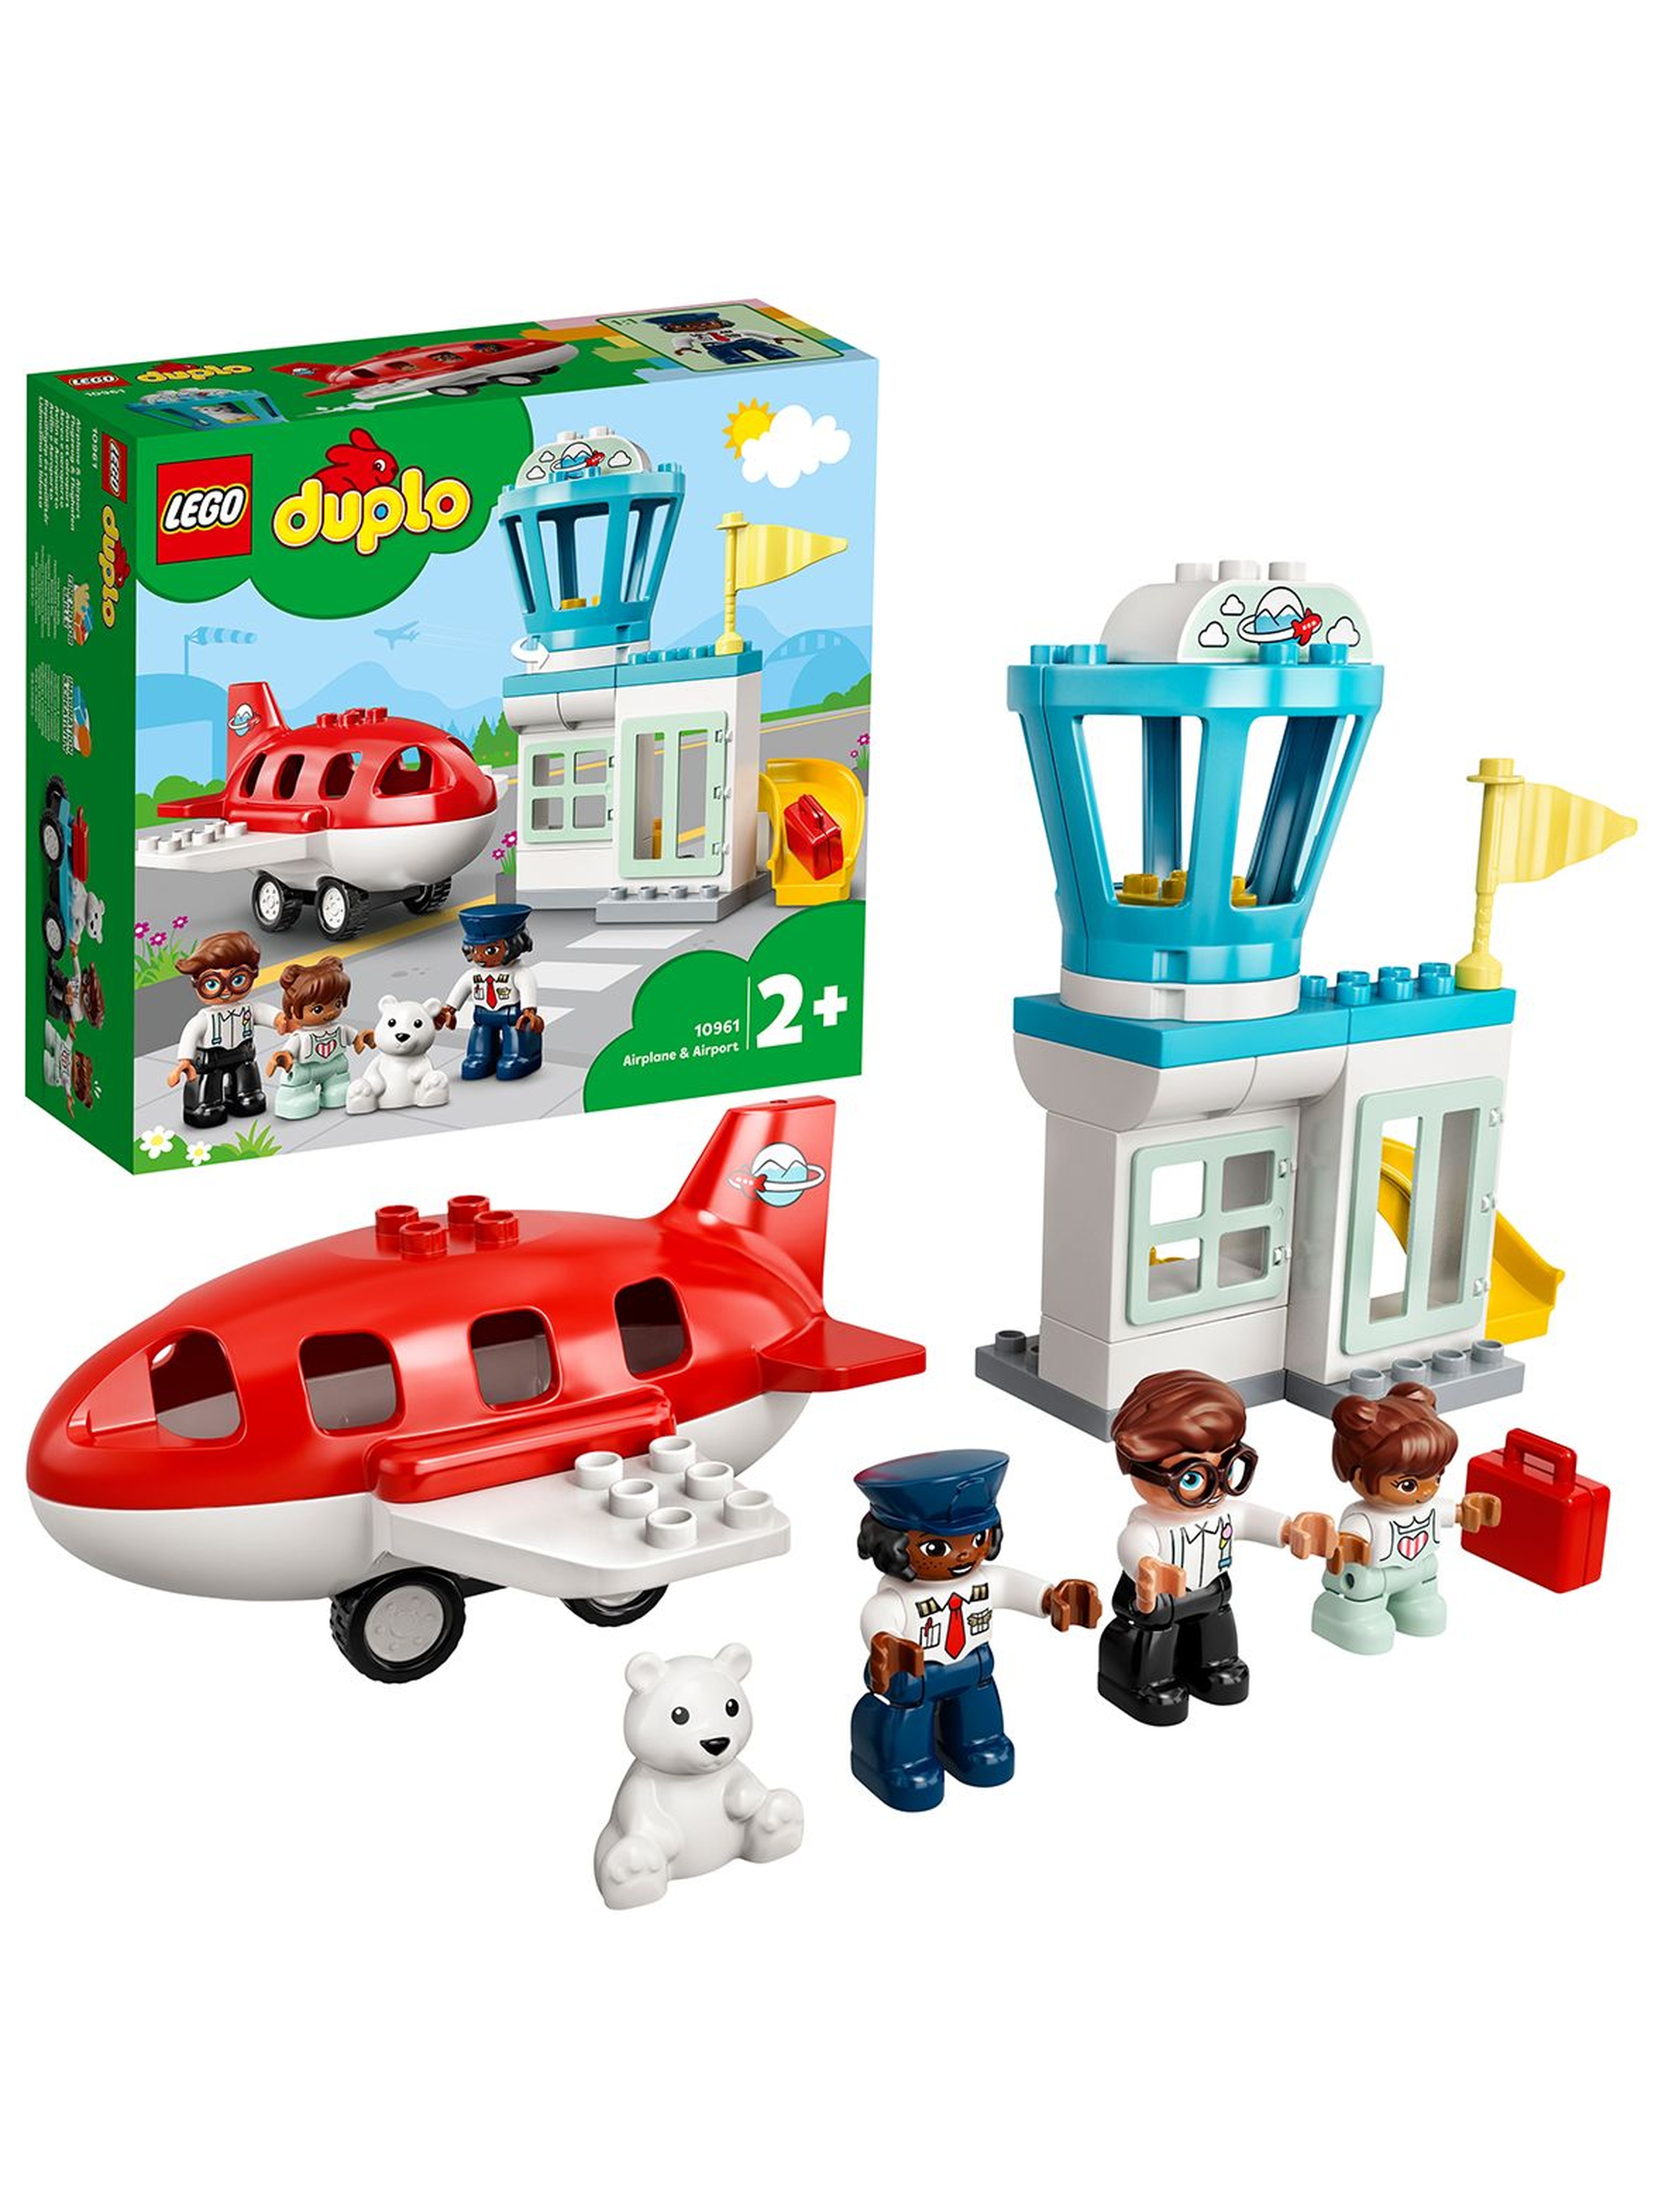 LEGO DUPLO Town - Samolot i lotnisko 10961-  28 elementów, wiek 2+